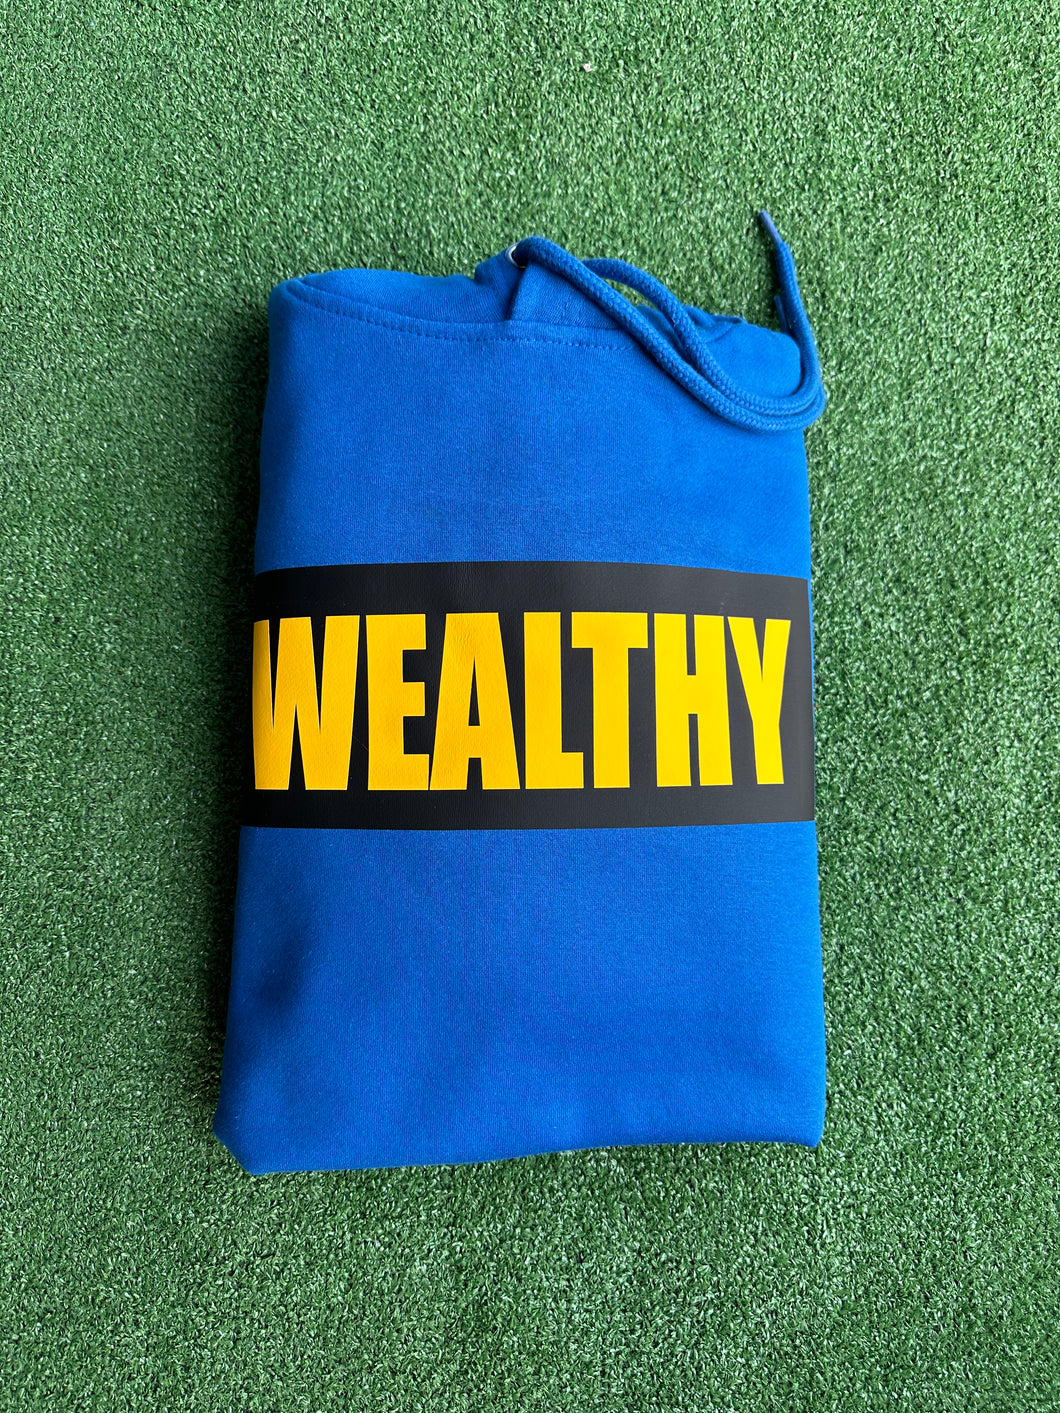 Wealthy Hoodie (Blue/Black/Yellow)